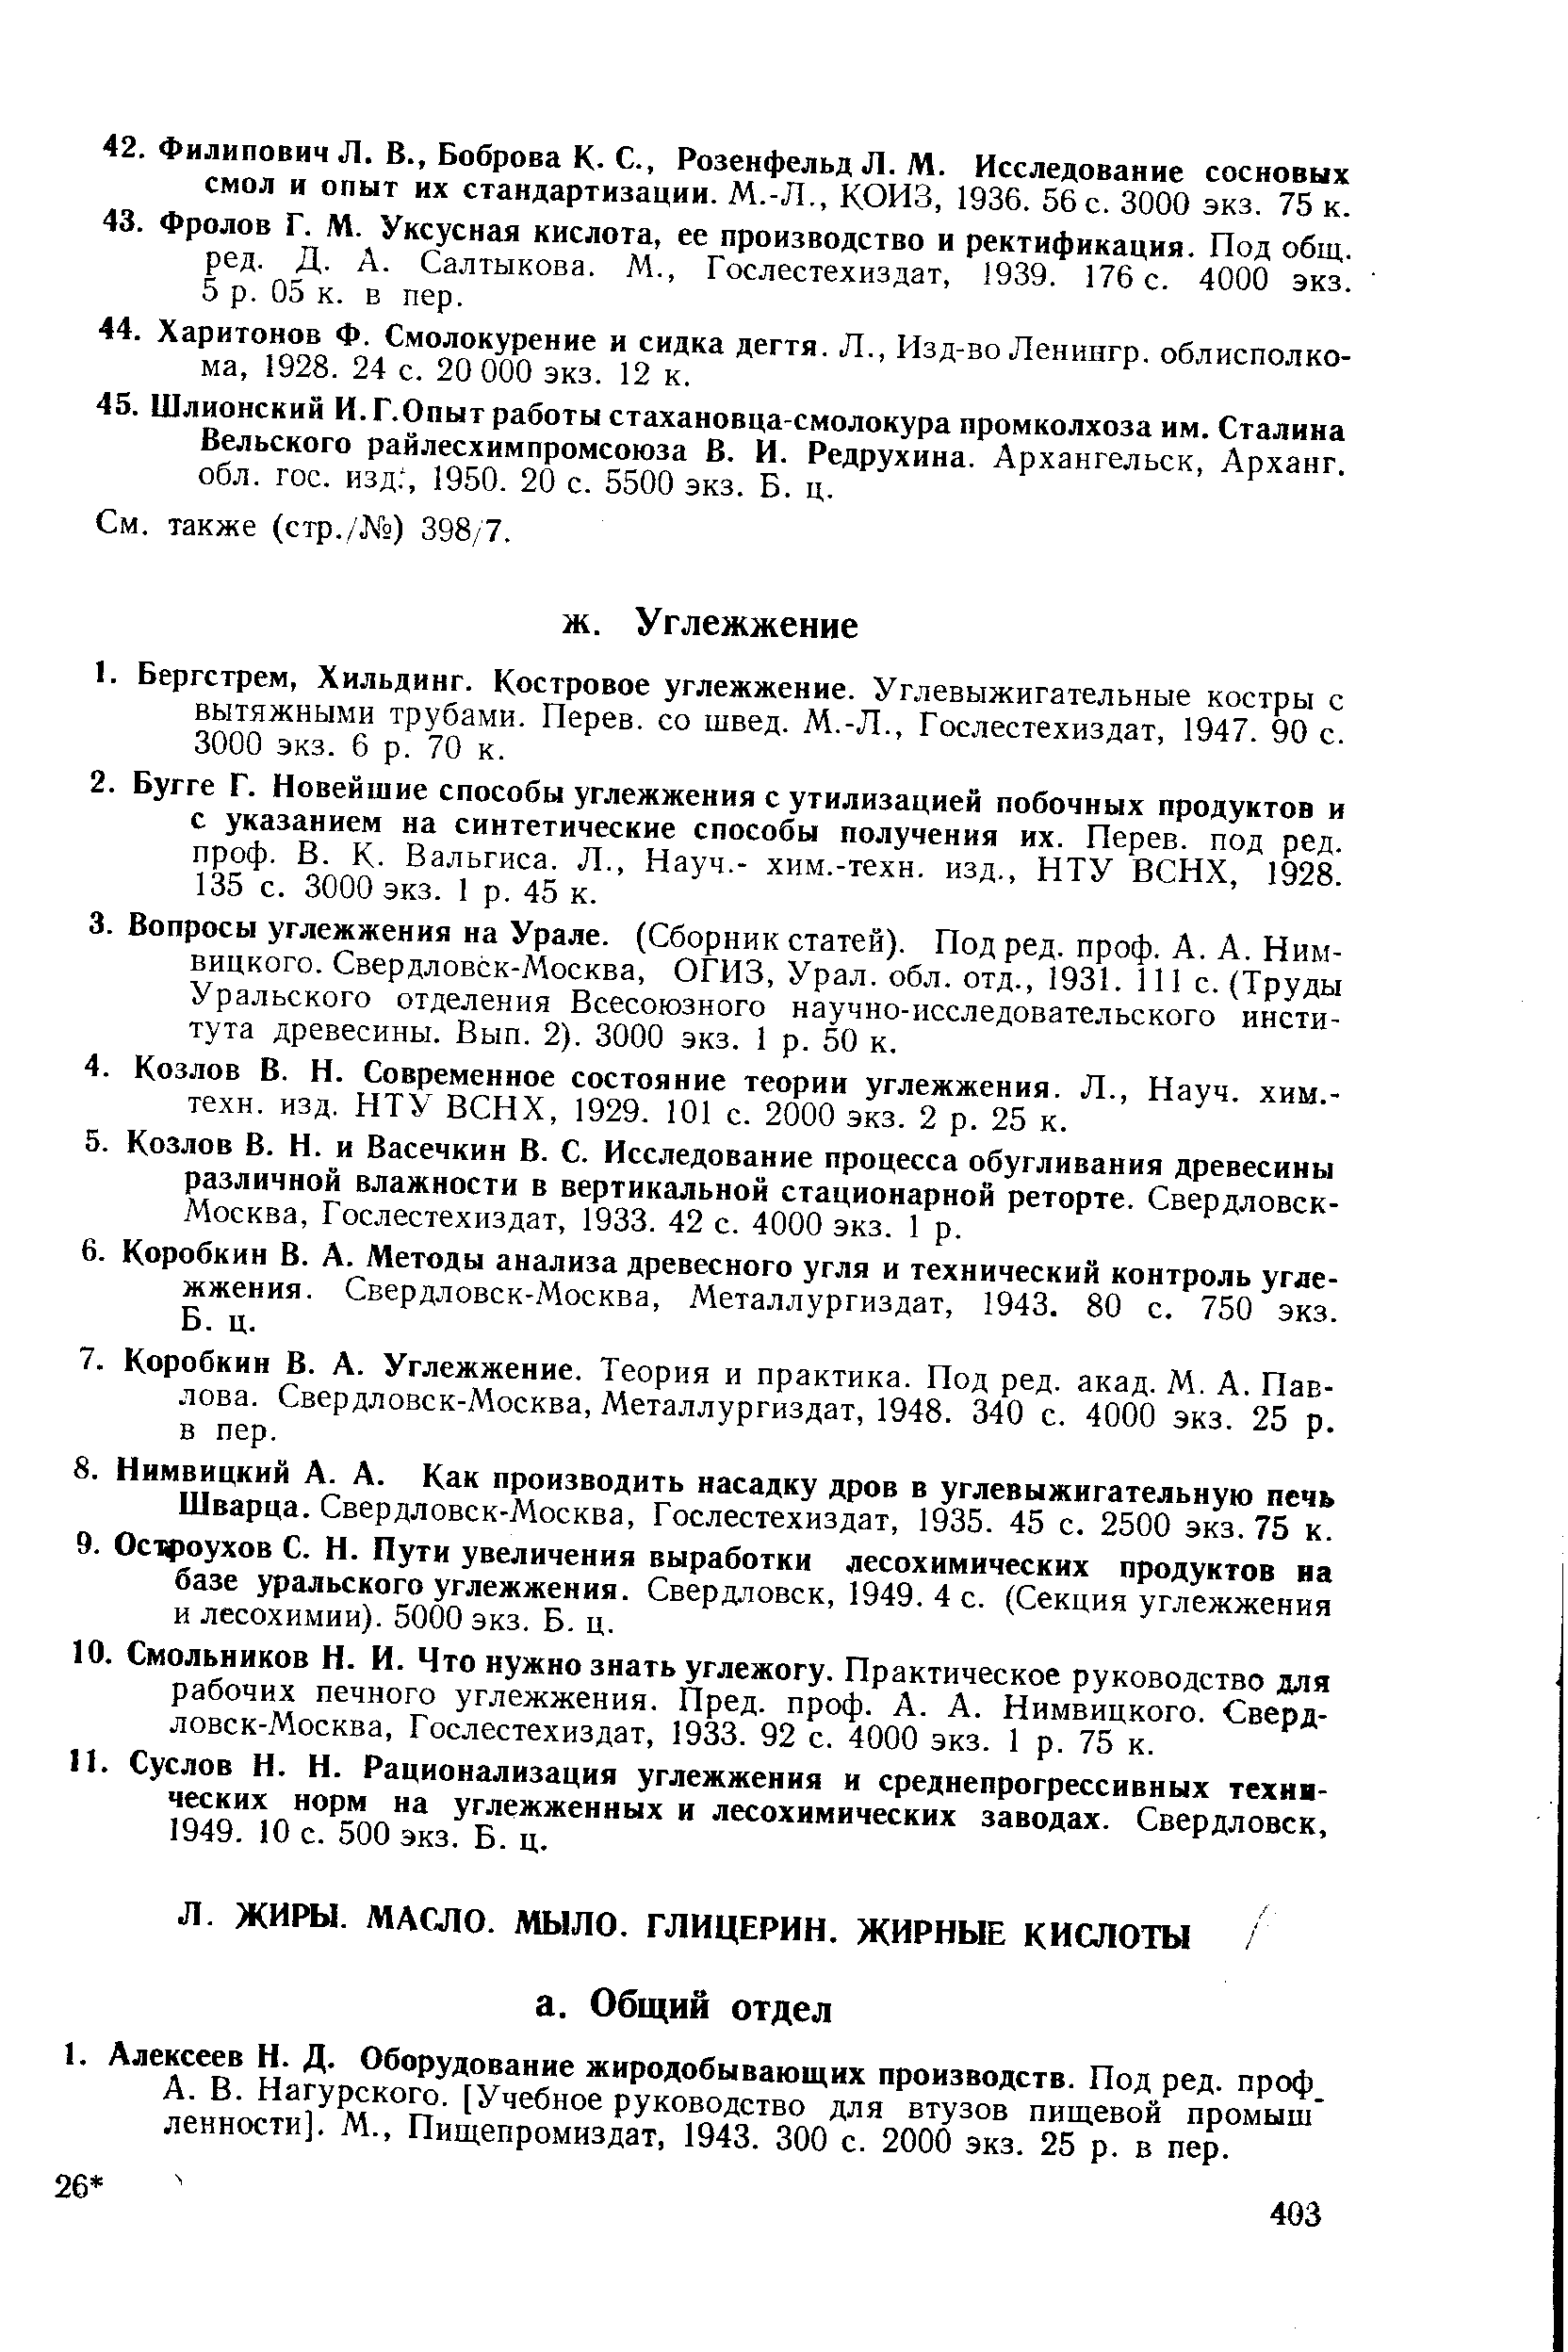 Шварца. Свердловск-Москва, Гослестехиздат, 1935. 45 с. 2500 экз. 75 к.